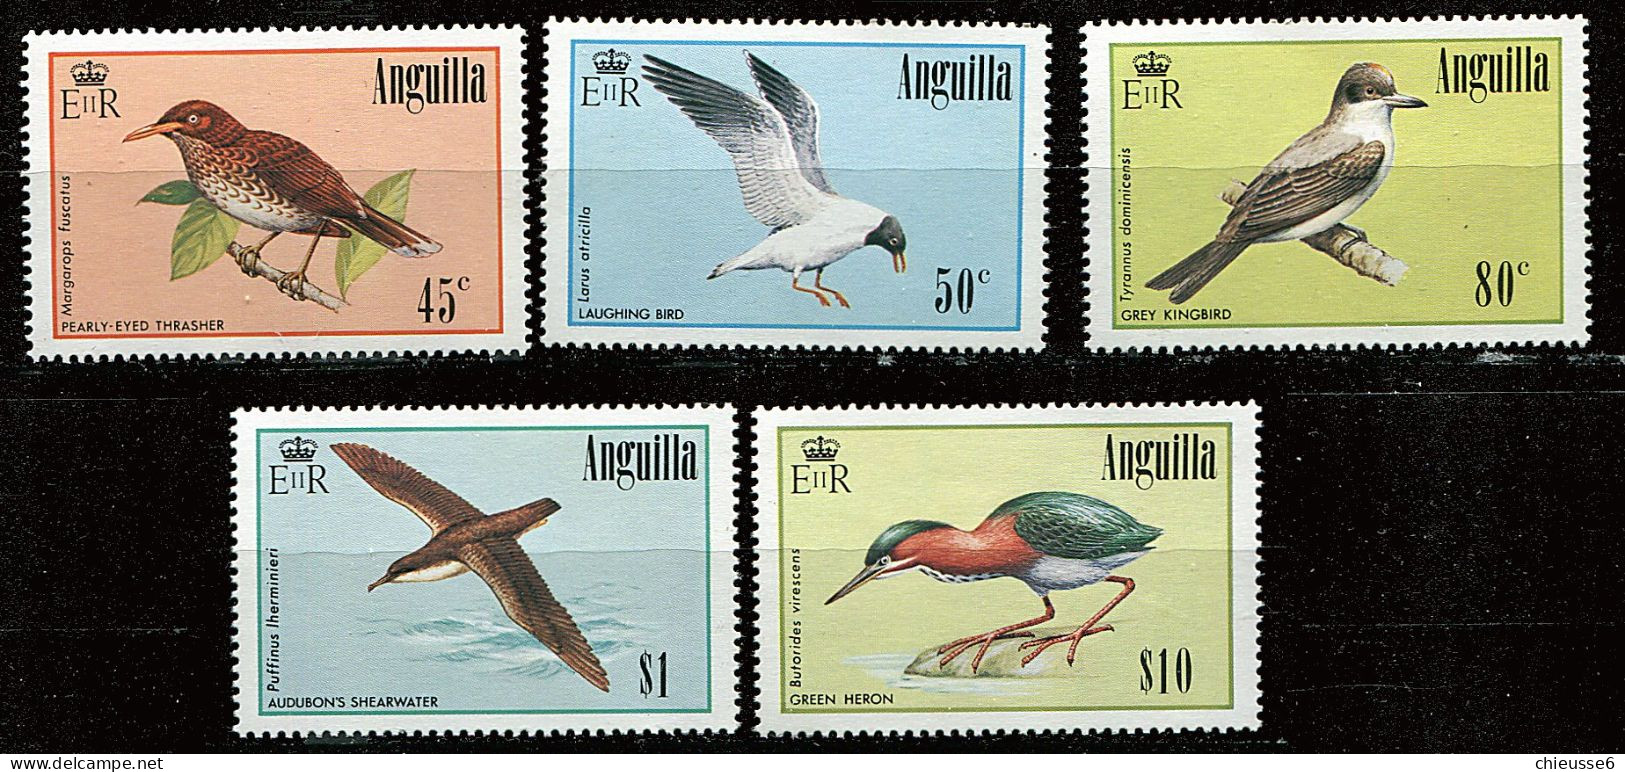 Anguilla ** N° 593 à 597 - Oiseaux - Anguilla (1968-...)